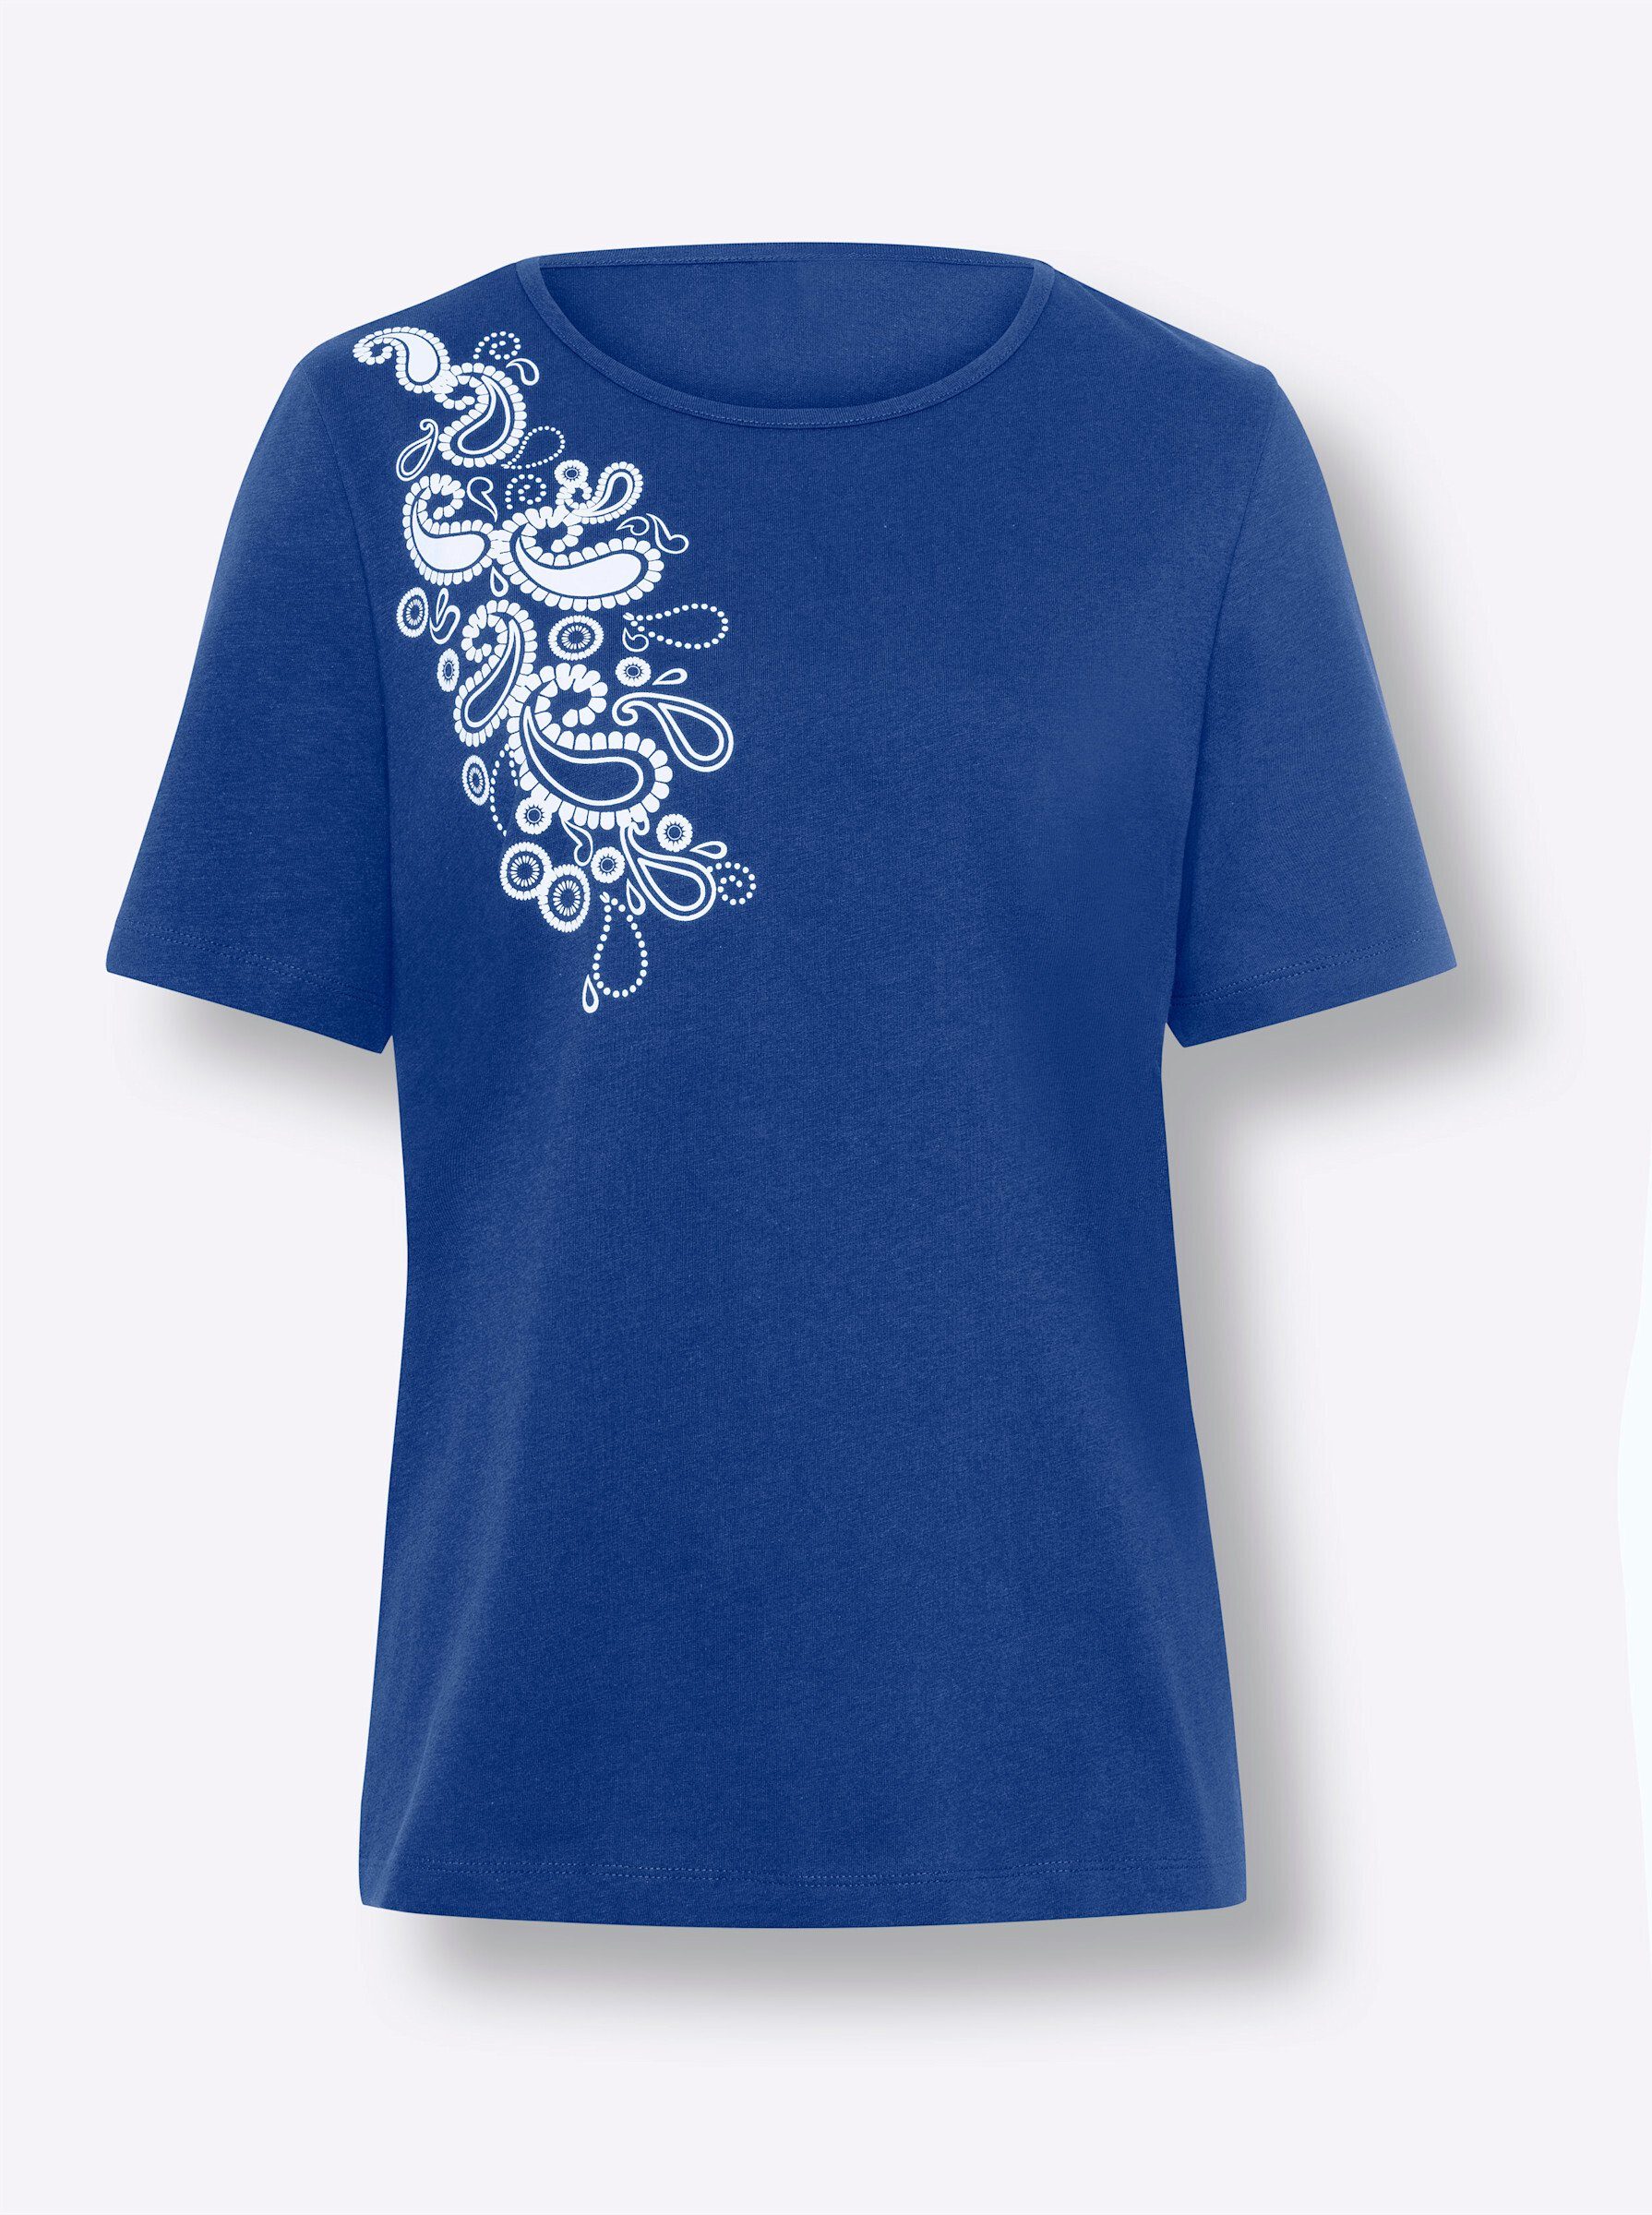 Sieh royalblau-weiß an! T-Shirt